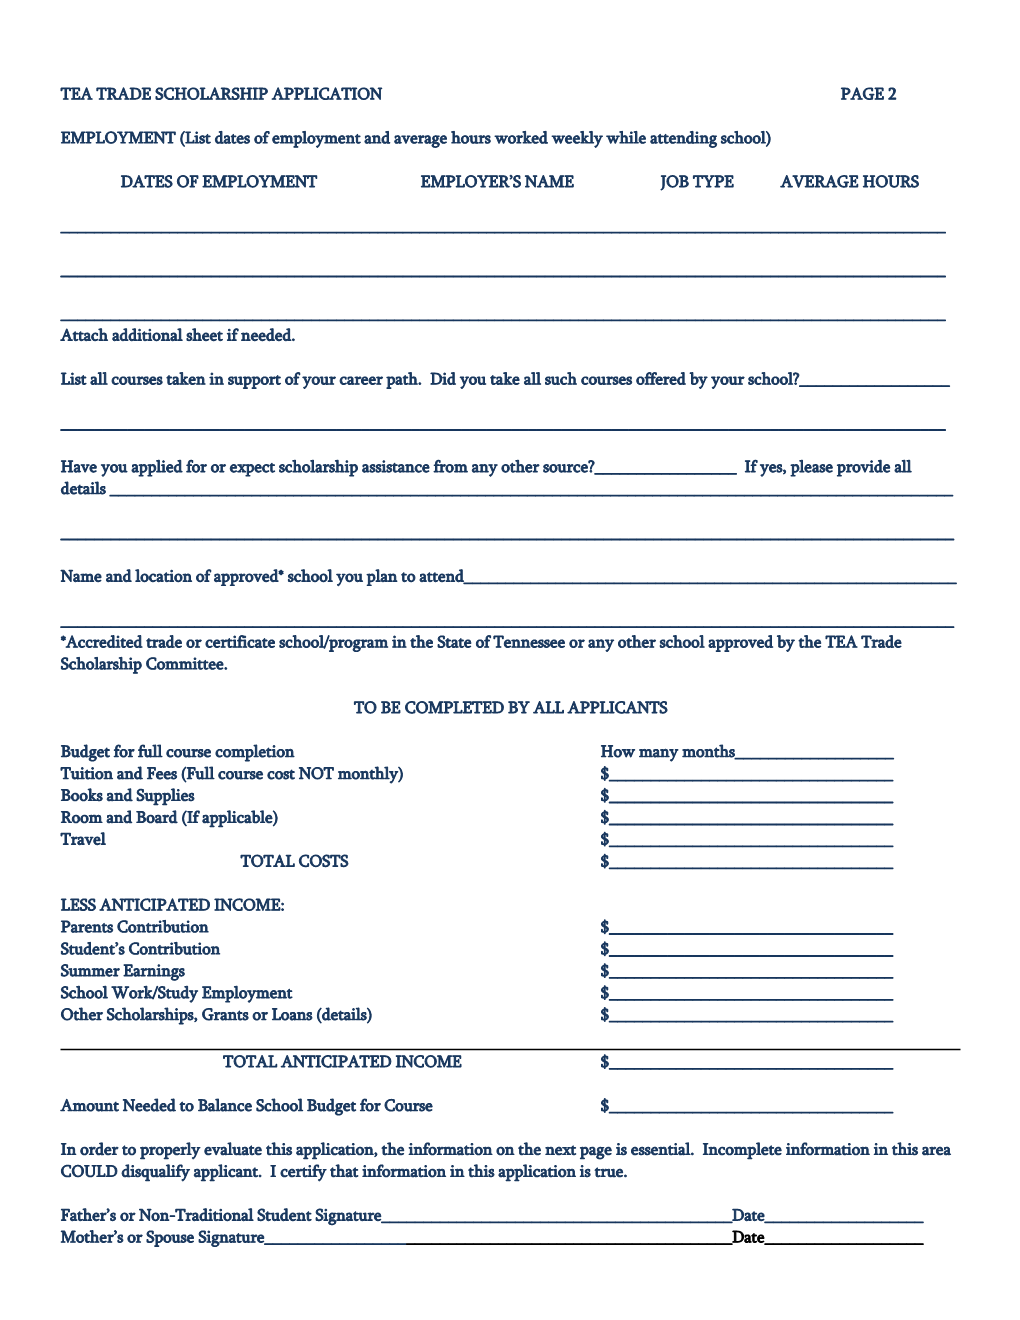 Tennessee Elks Association Trade Scholarship Application